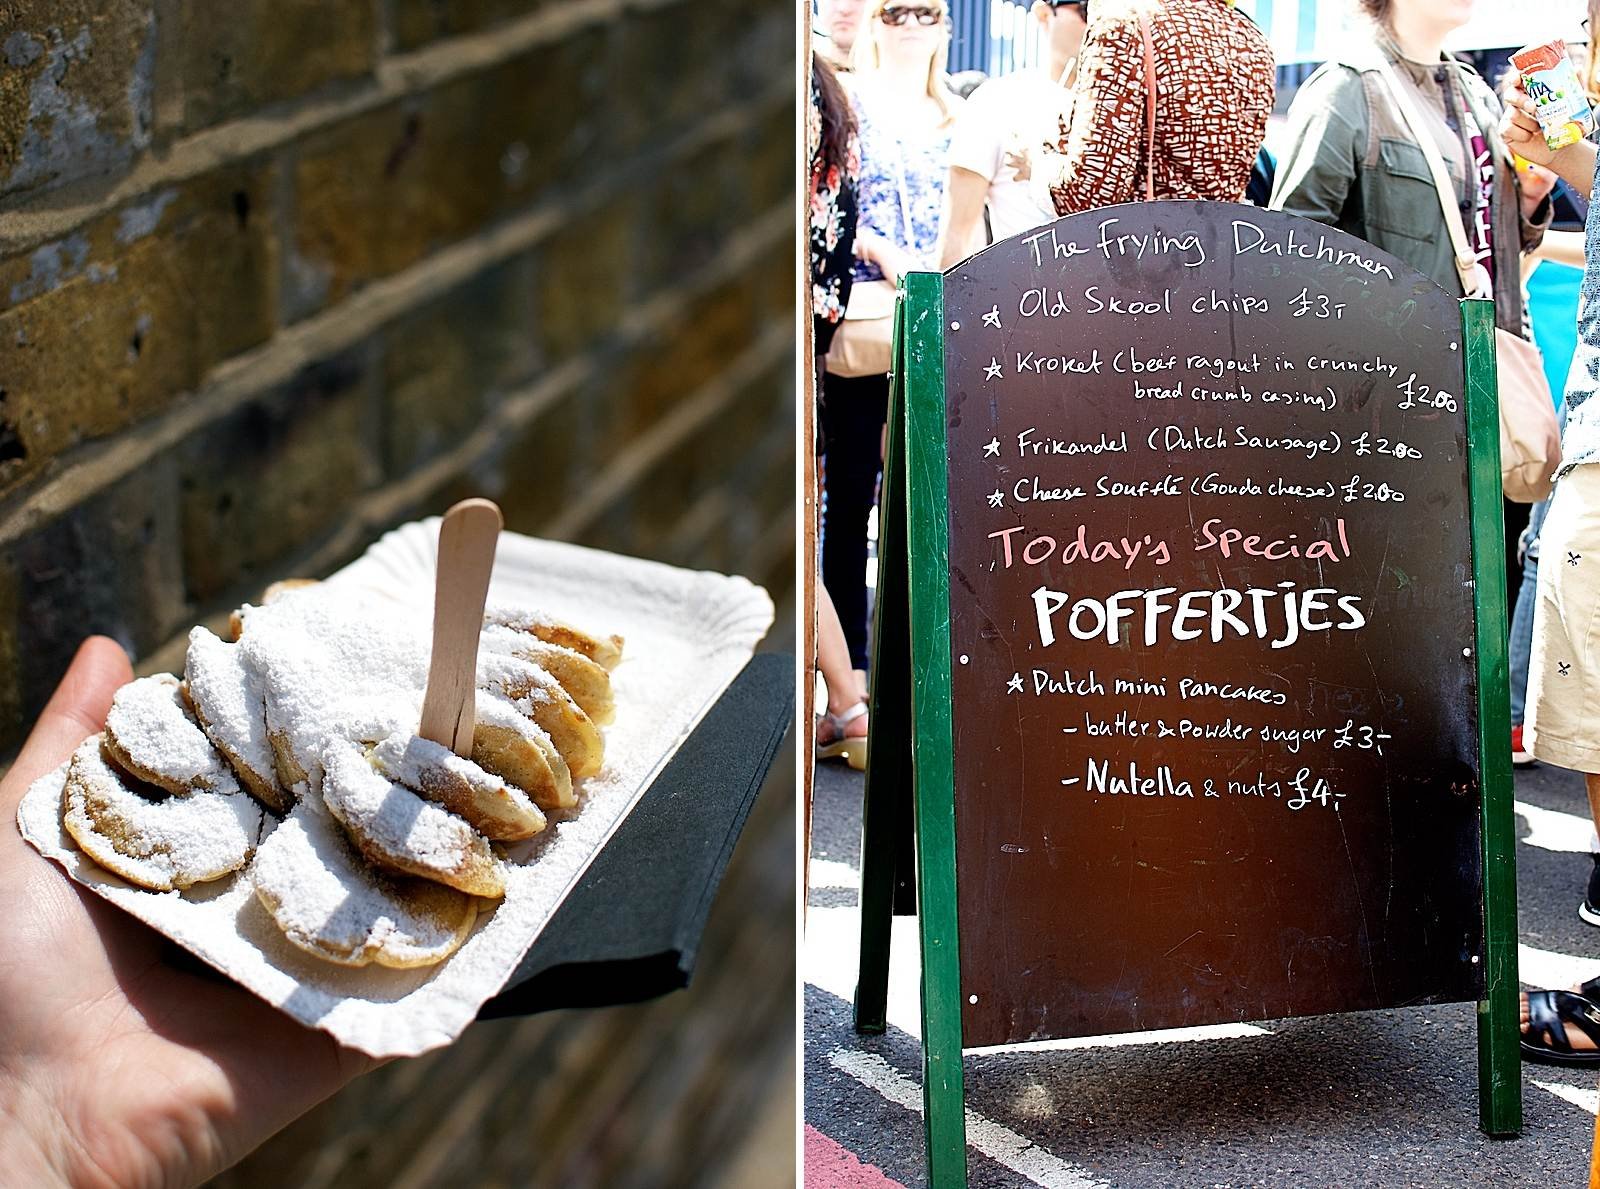 Poffertjes from the Frying Dutchmen in London